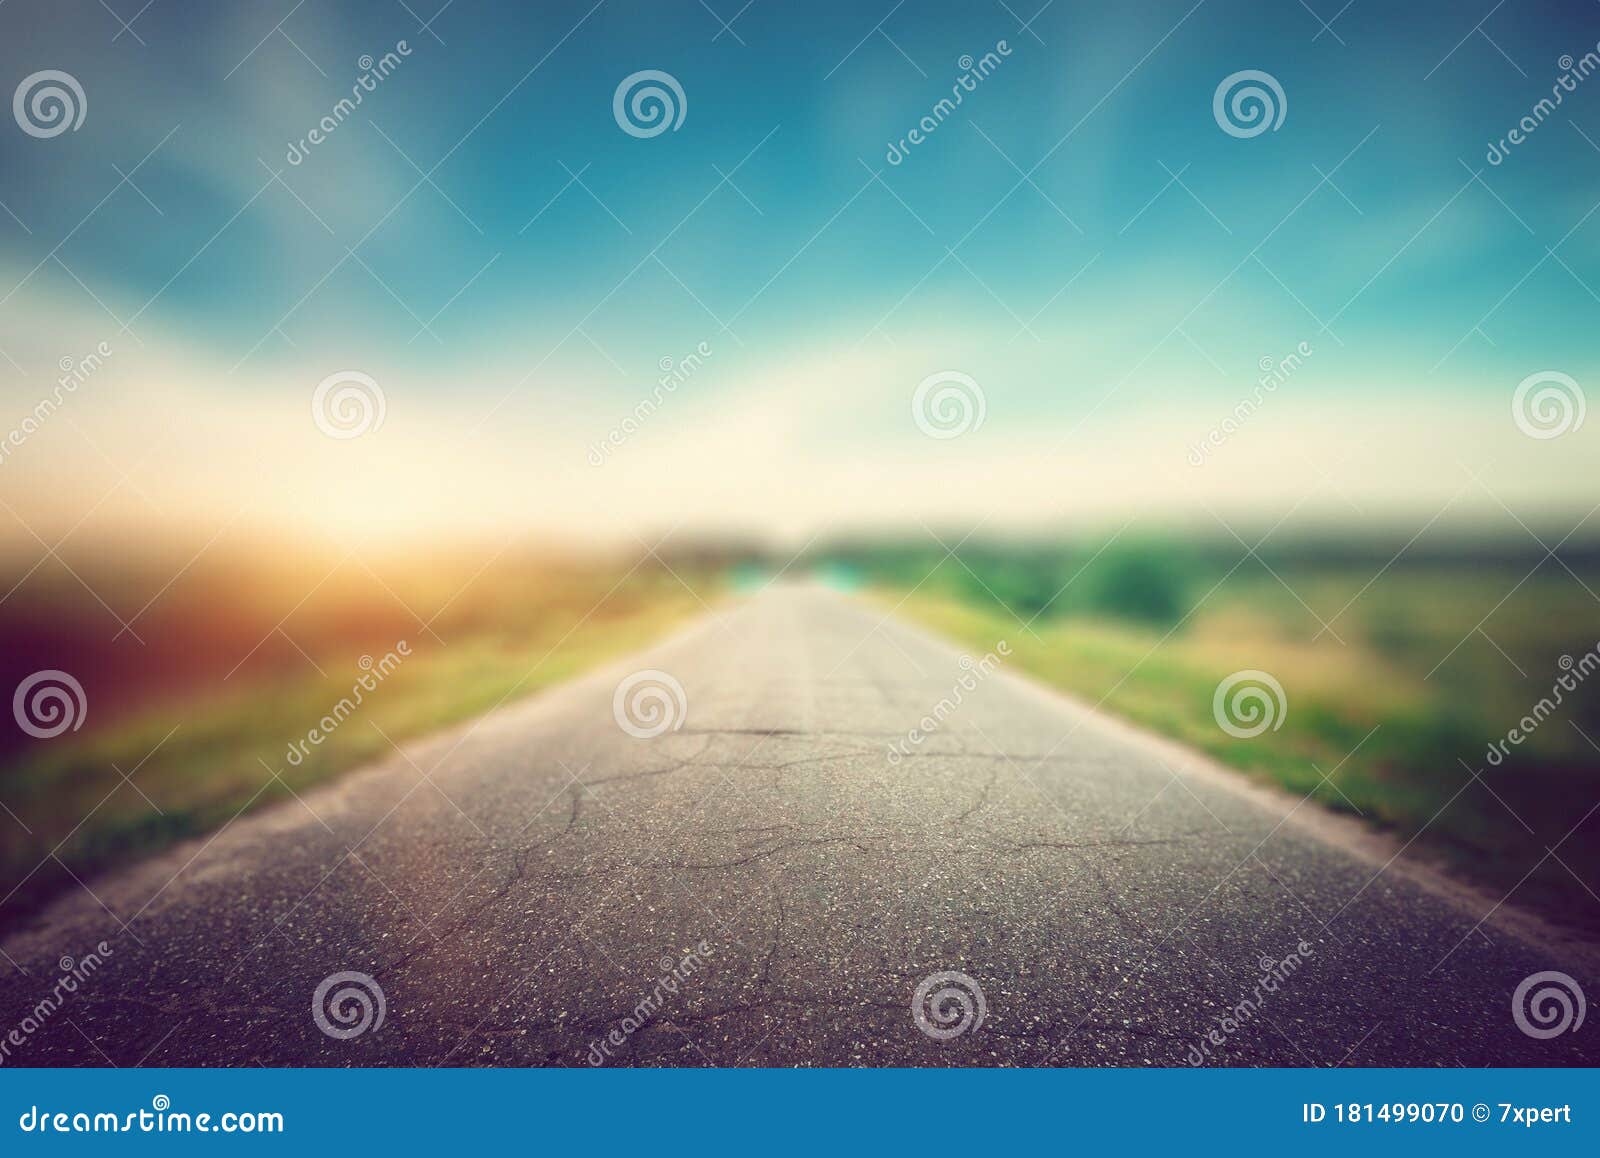 夏季道路背景库存照片 图片包括有云彩 夜间 旅行 道路 涂柏油的 蓝蓝 自治权 全景